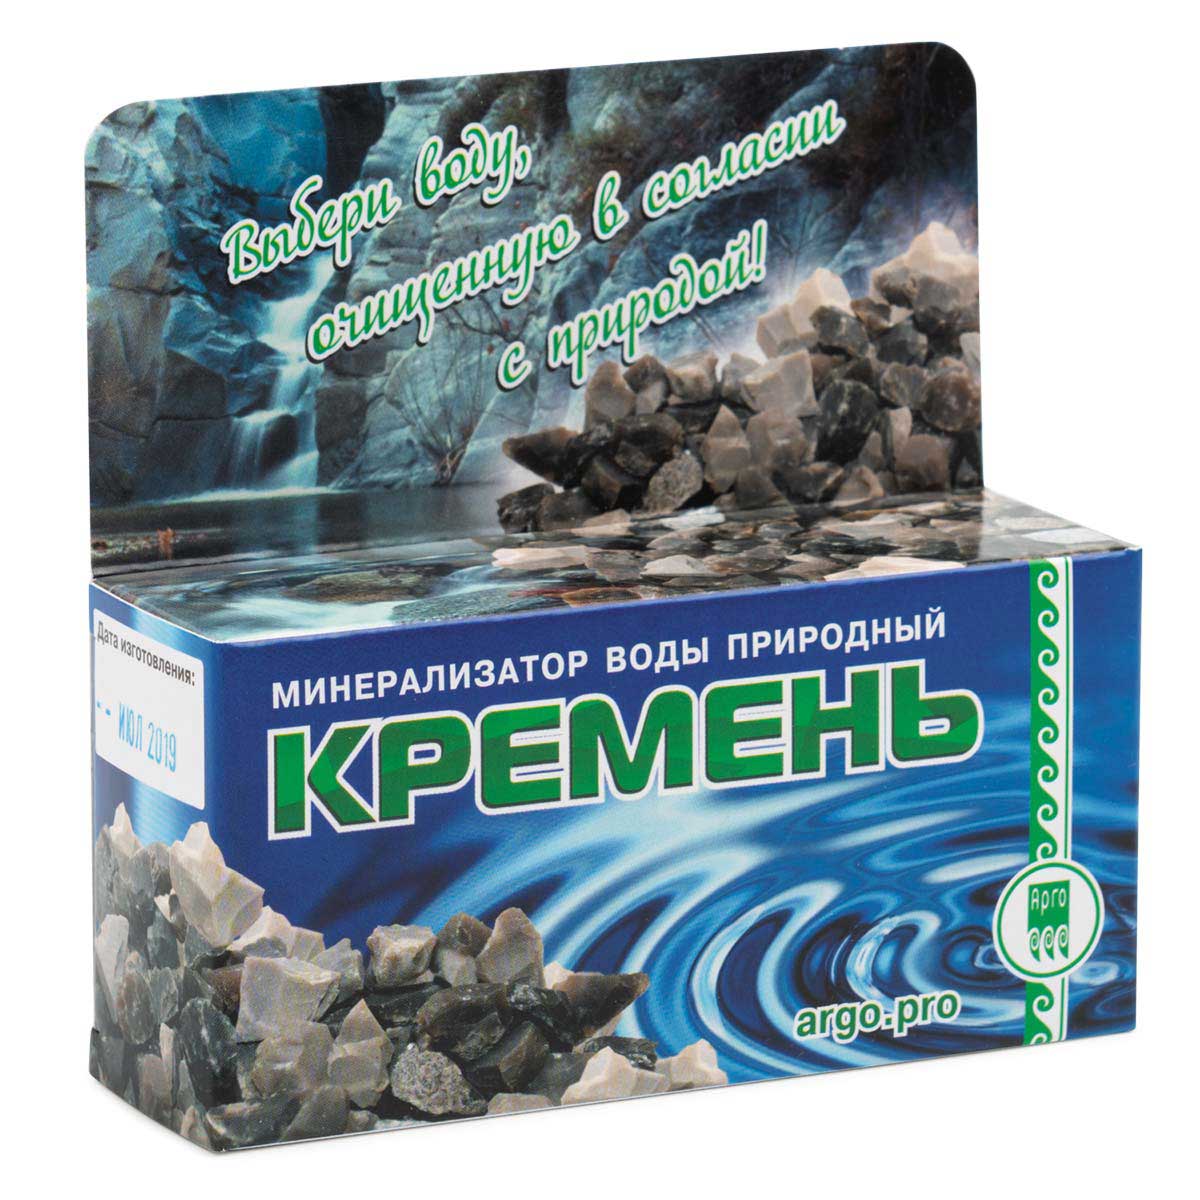 Минерализатор воды природный Кремень от Сибирь-Цео